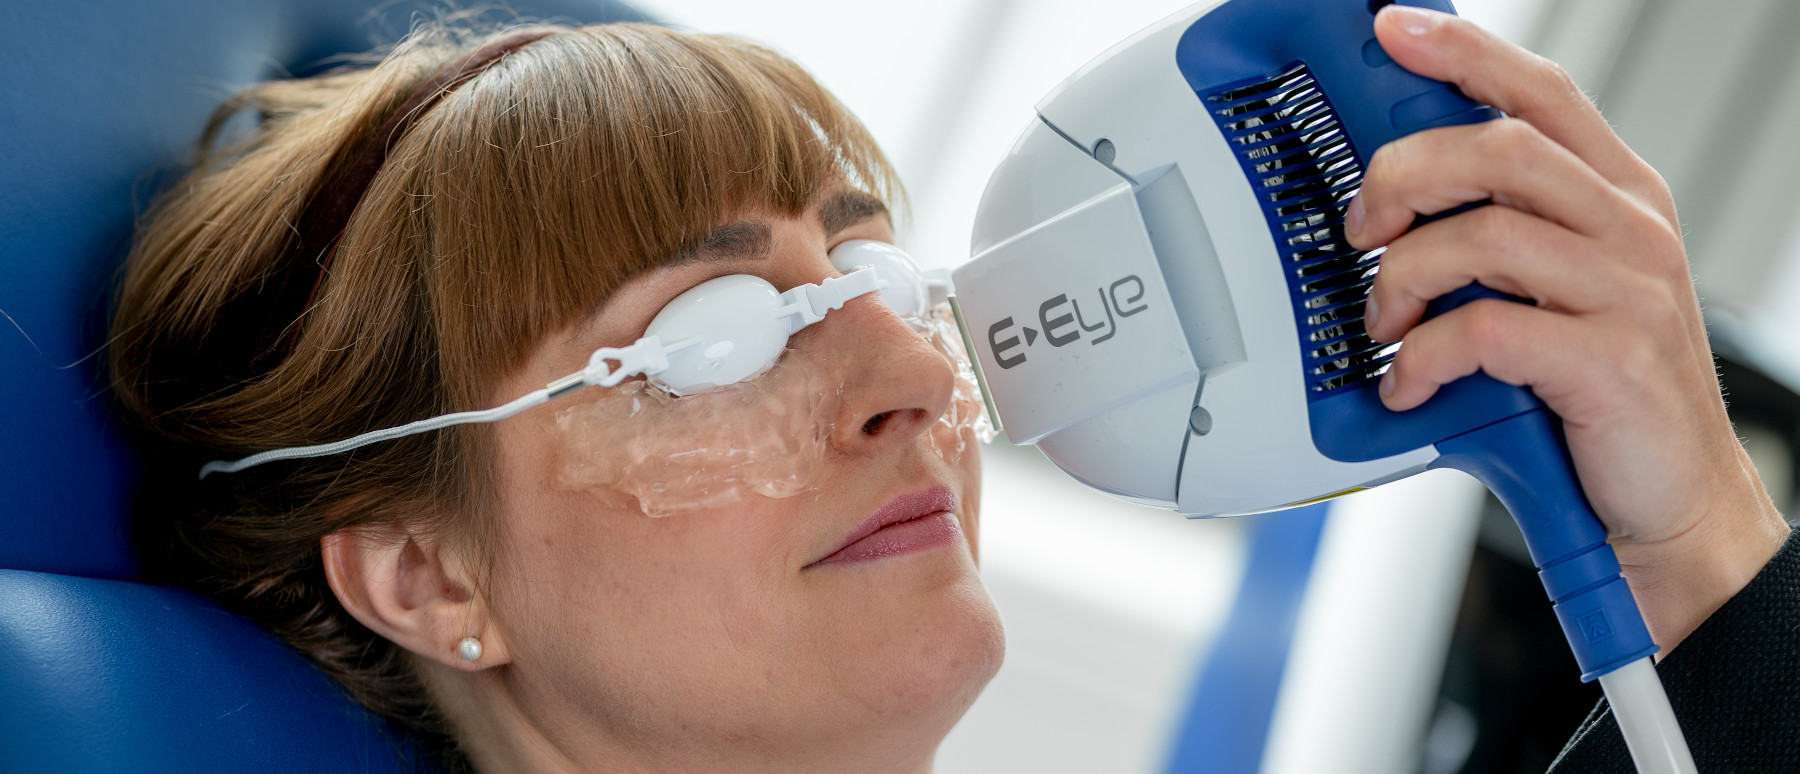 Eine Frau lässt ihre trockenen Augen mit e-eye bei den Augenpartnern behandeln